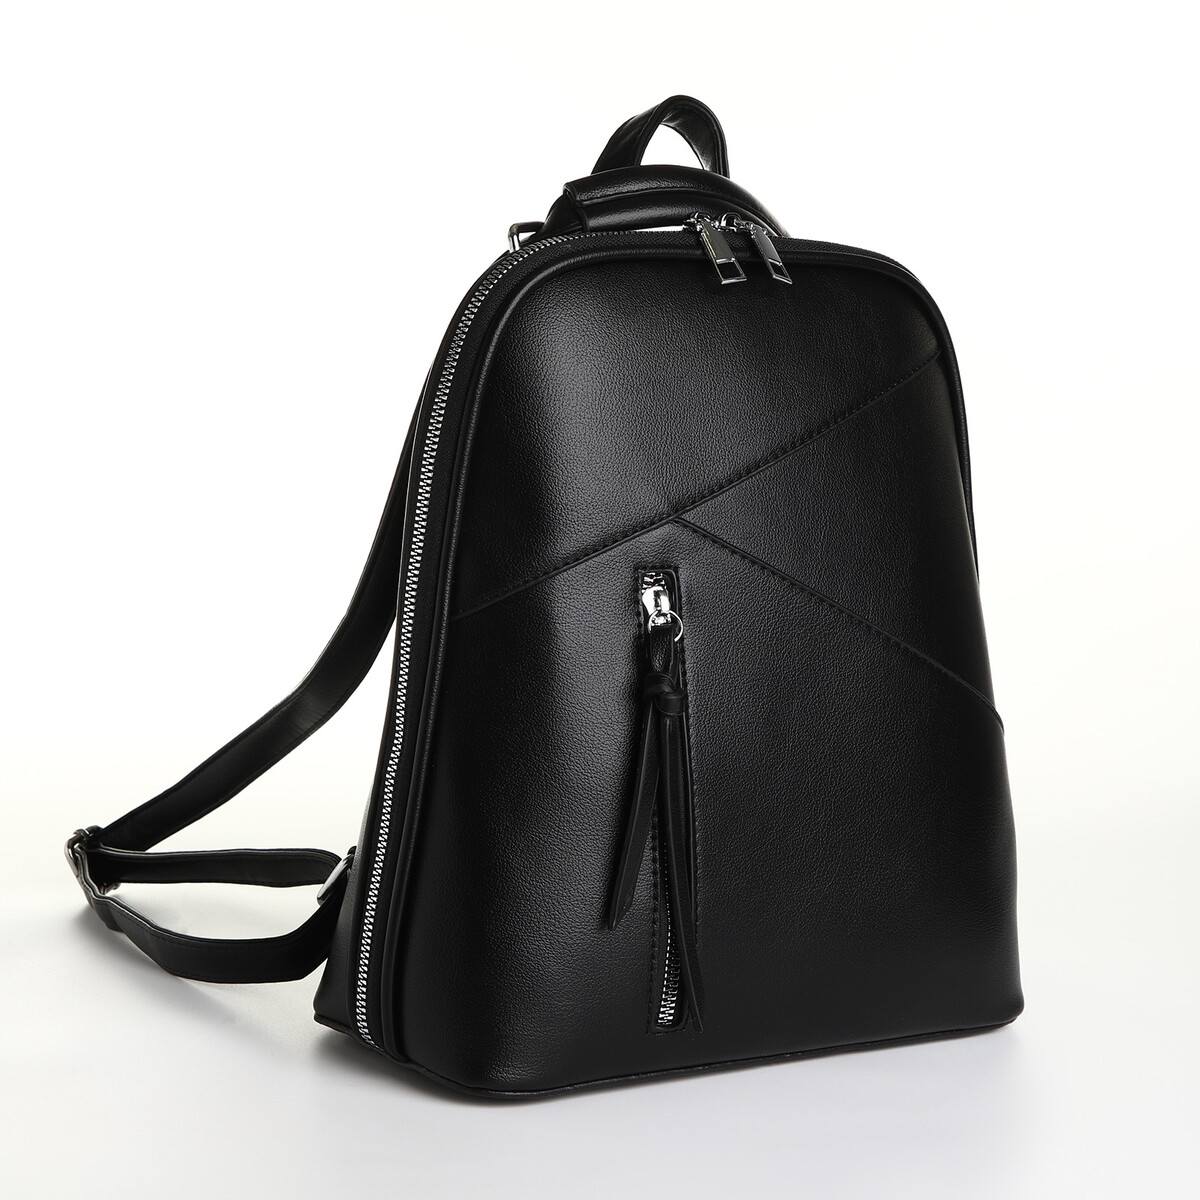 Рюкзак городской из искусственной кожи на молнии, цвет черный